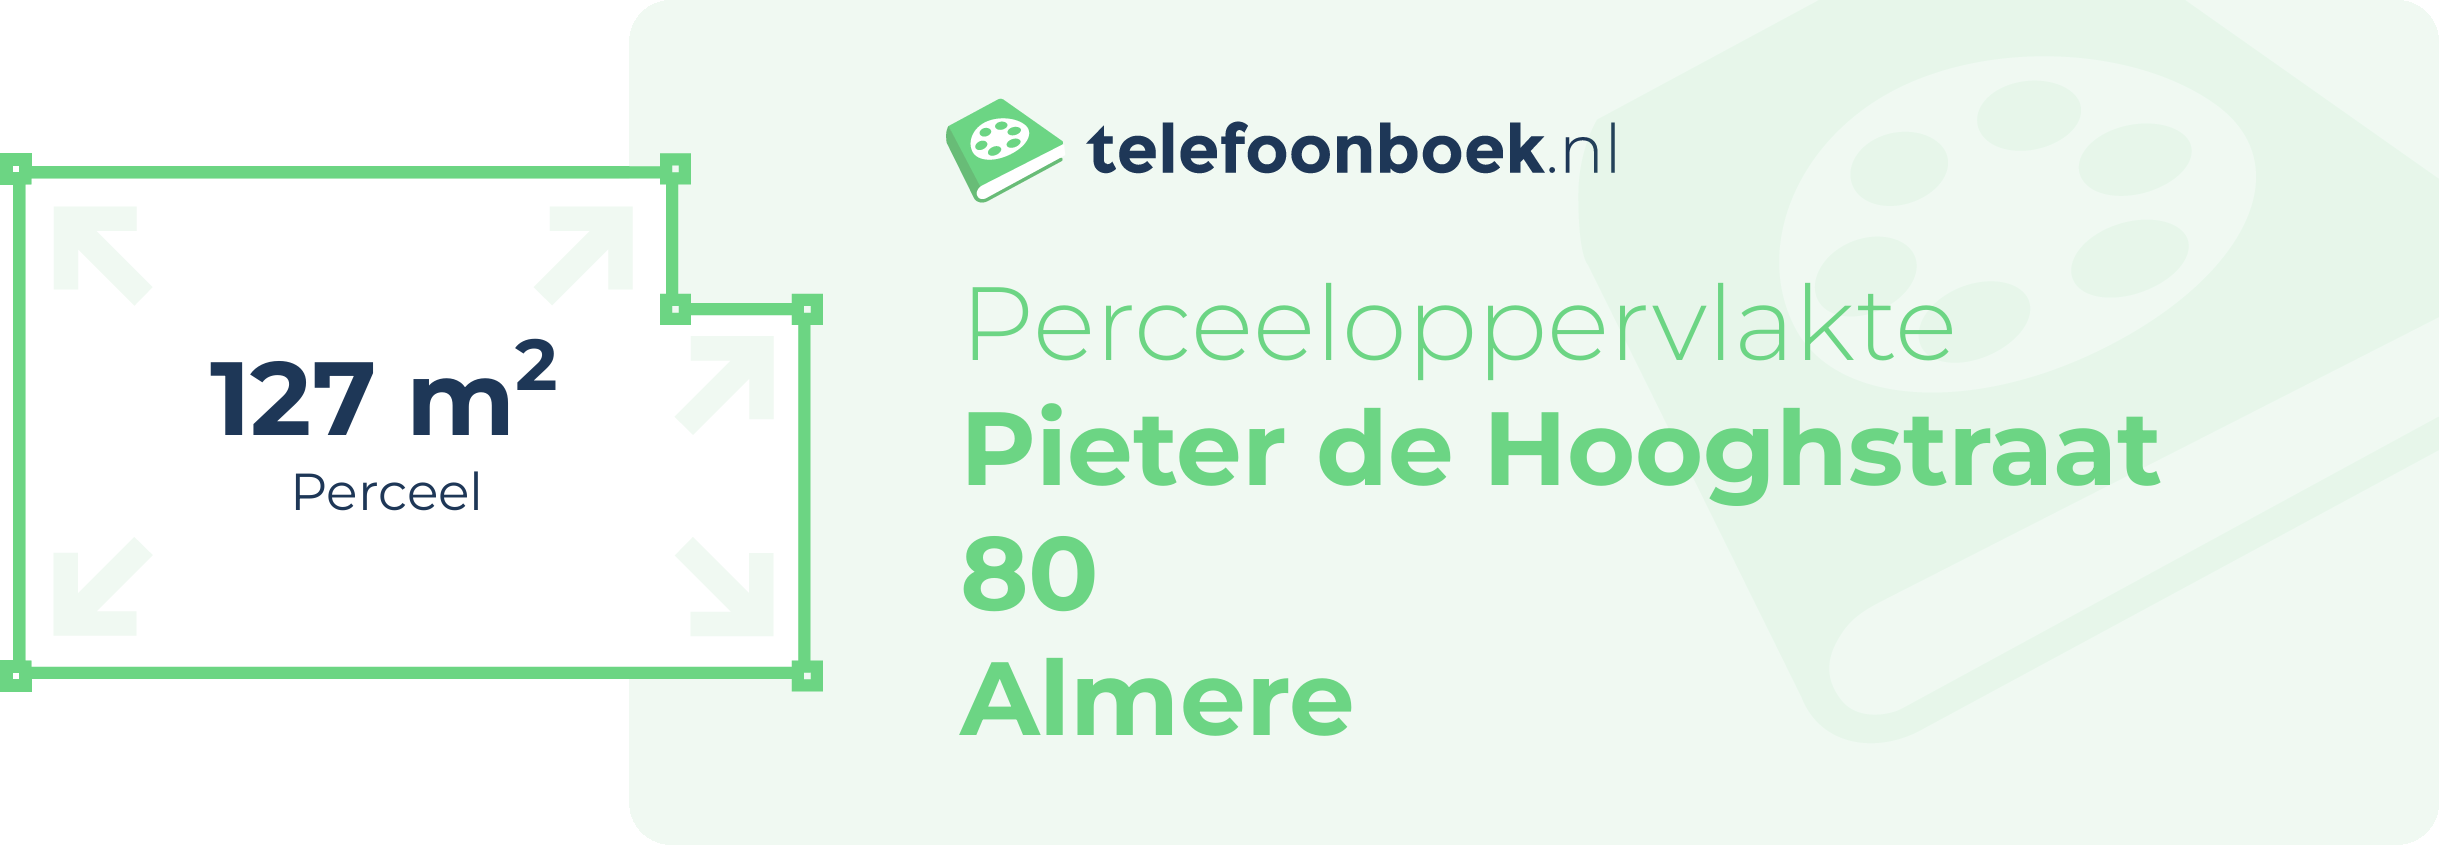 Perceeloppervlakte Pieter De Hooghstraat 80 Almere